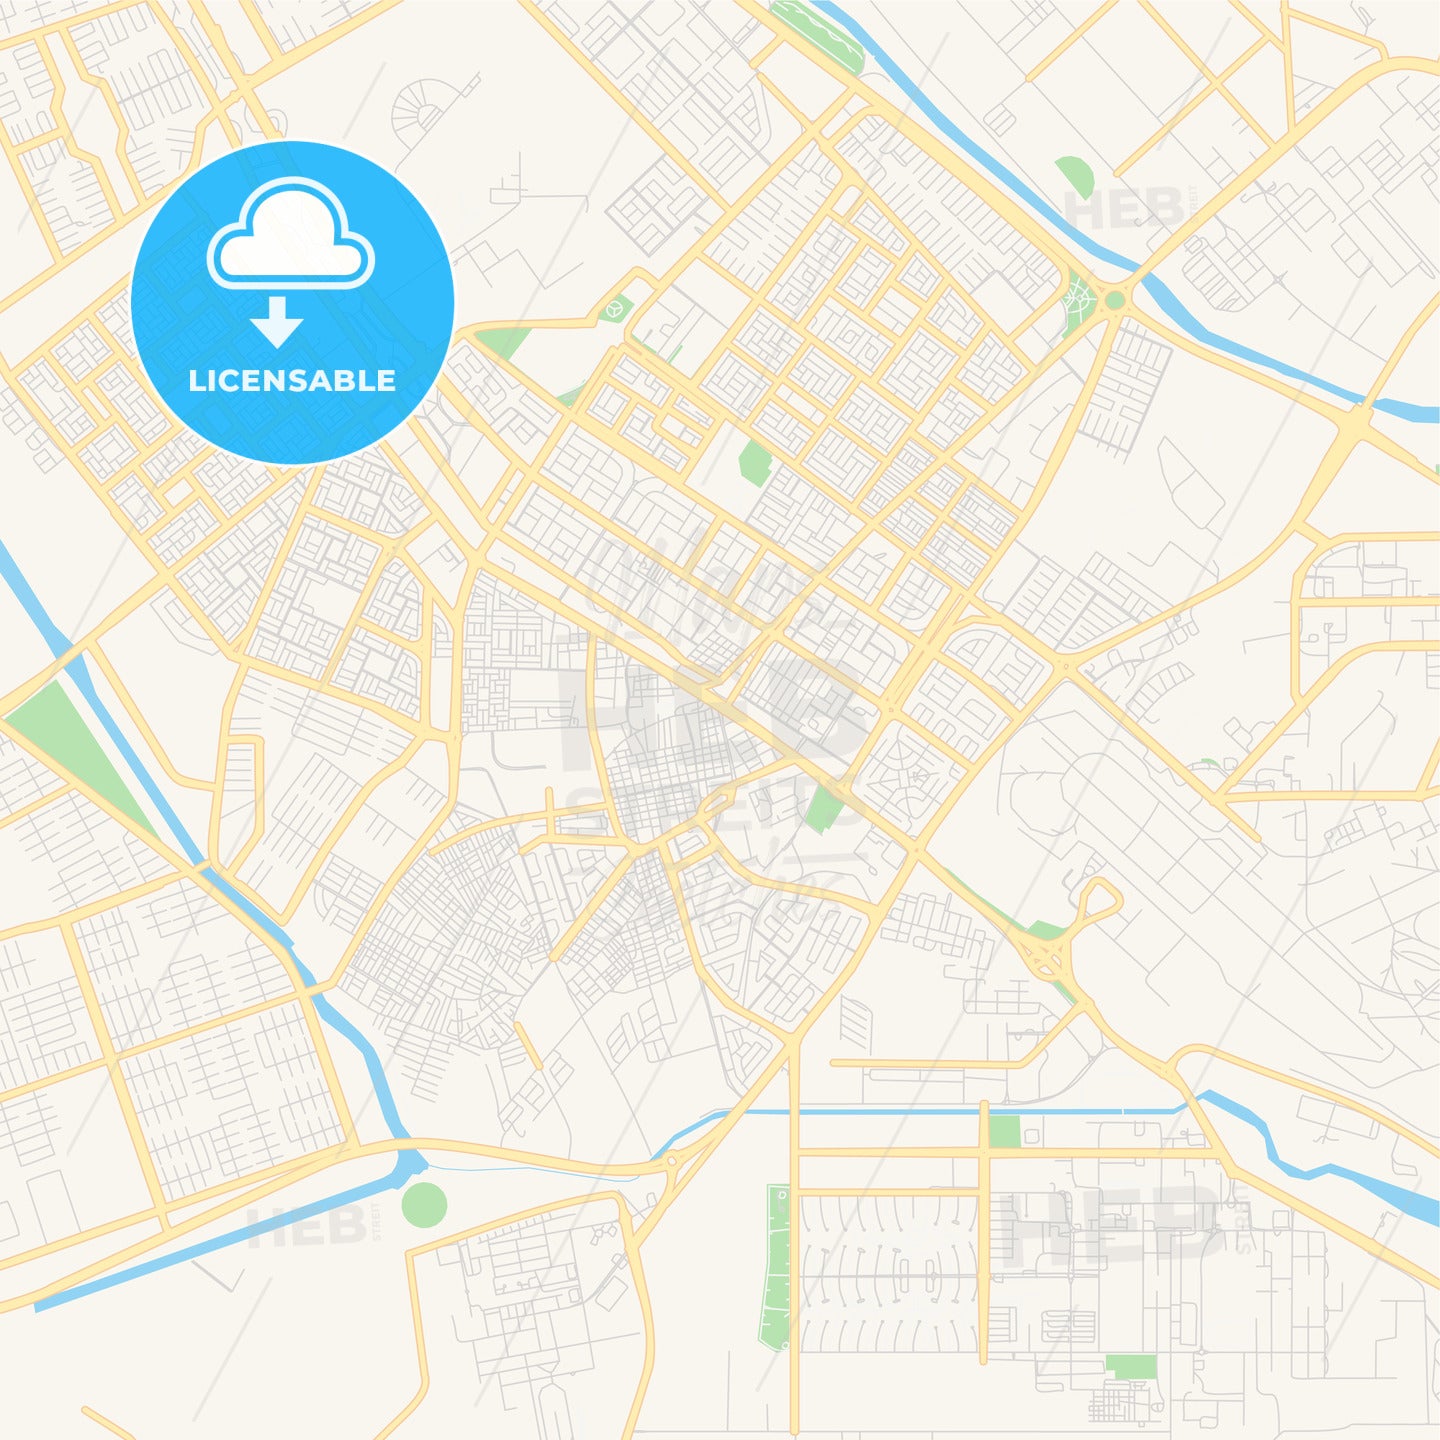 Printable street map of Tabuk, Saudi Arabia